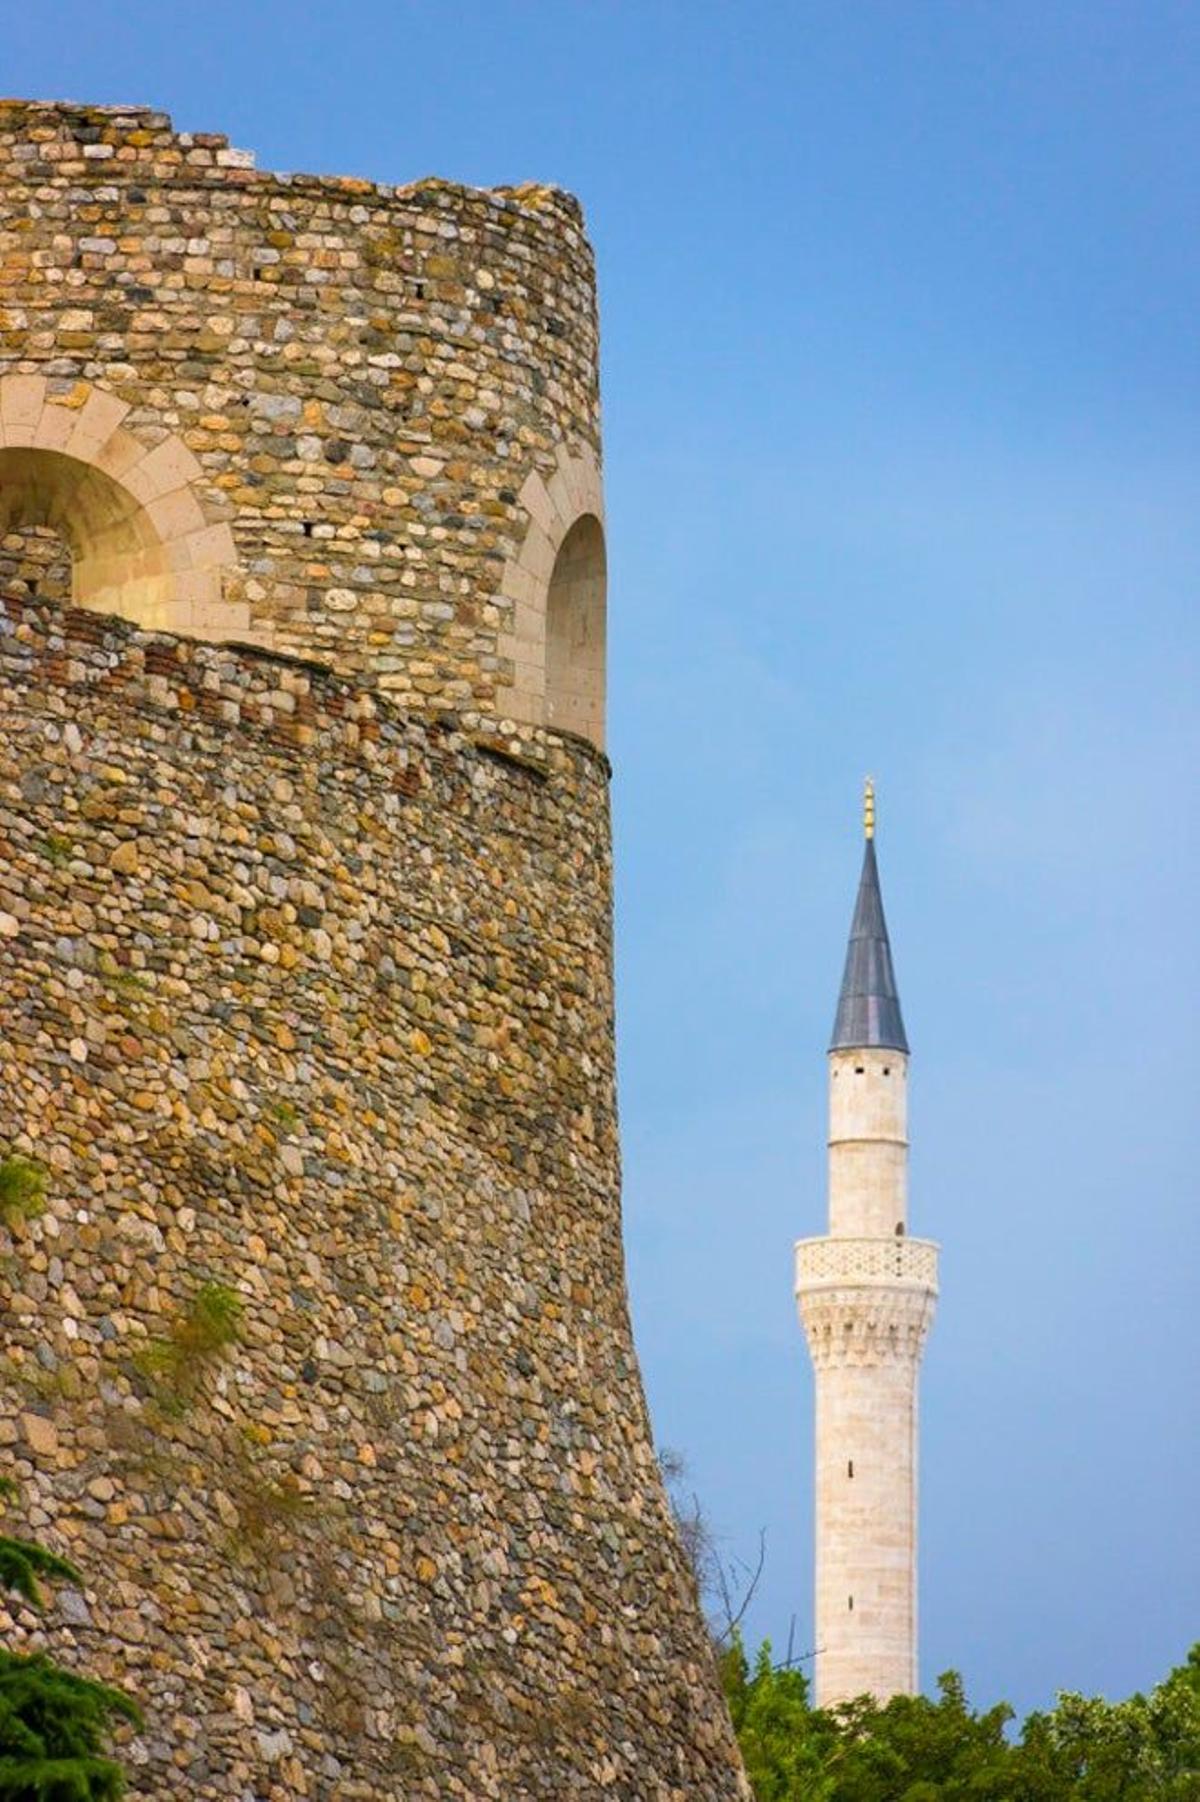 La fortaleza de Skopje, también conocida como Kale, con el minarete de la mezquita Mustapha Pasha al fondo.